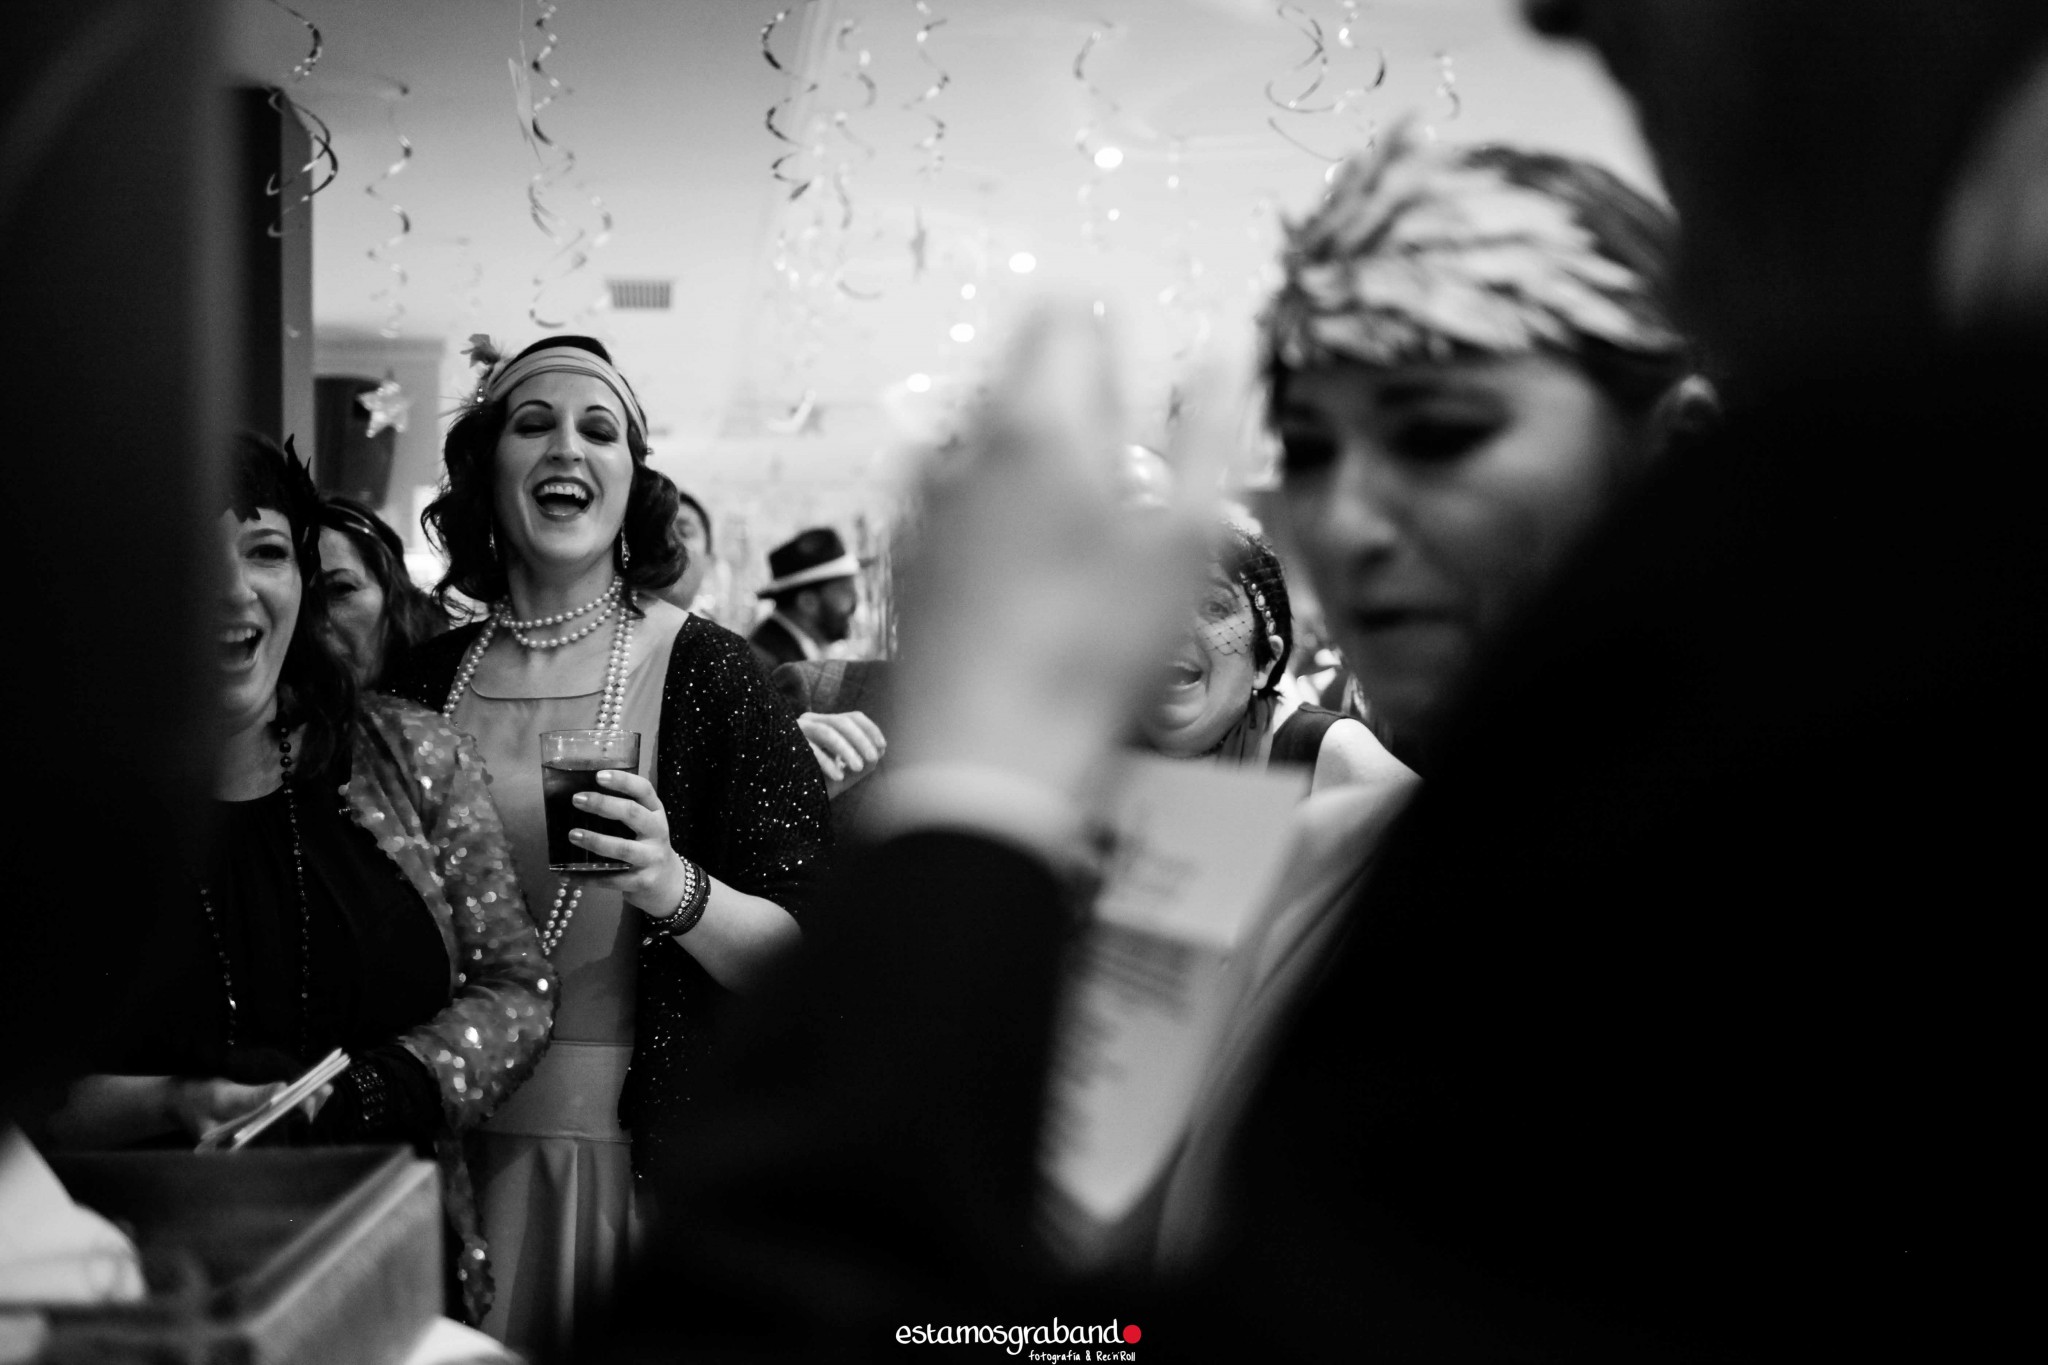 Fali-Bea-71-de-78 Fiesta Años 20 [La Teta de Julieta, Cádiz] - video boda cadiz